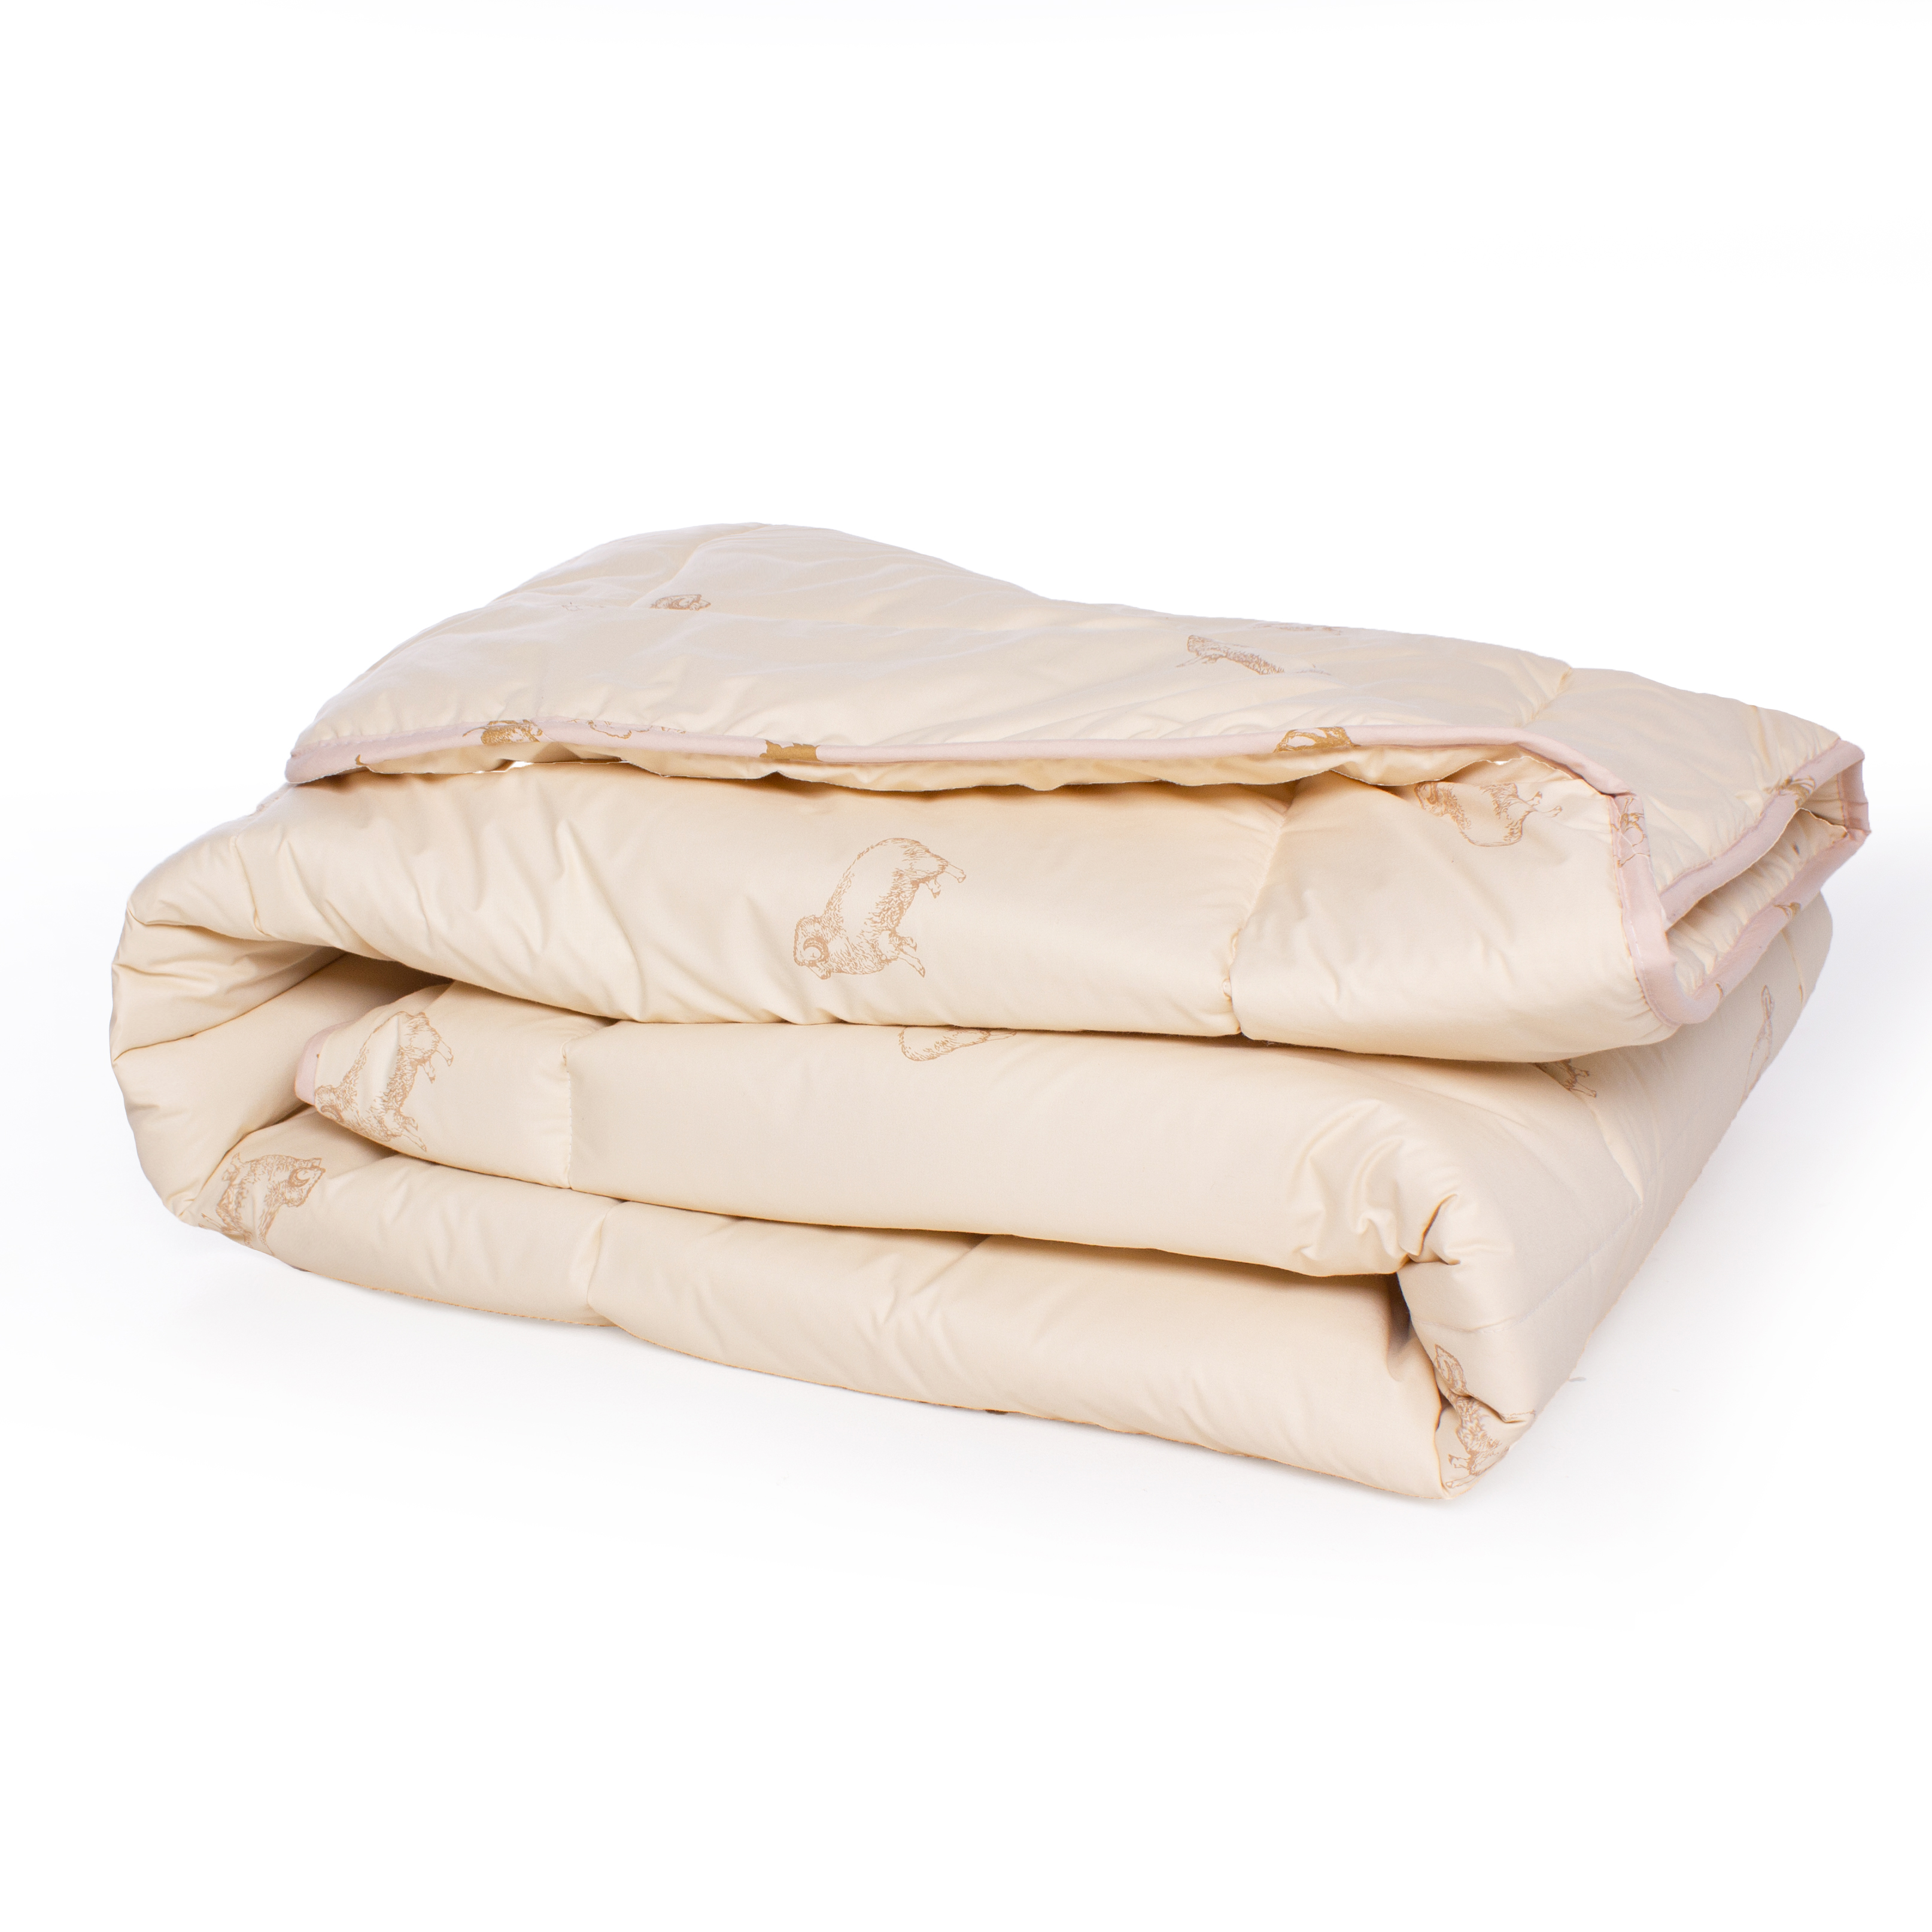 Одеяло шерстяное MirSon Gold Camel №024, зимнее, 140x205 см, кремовое - фото 2